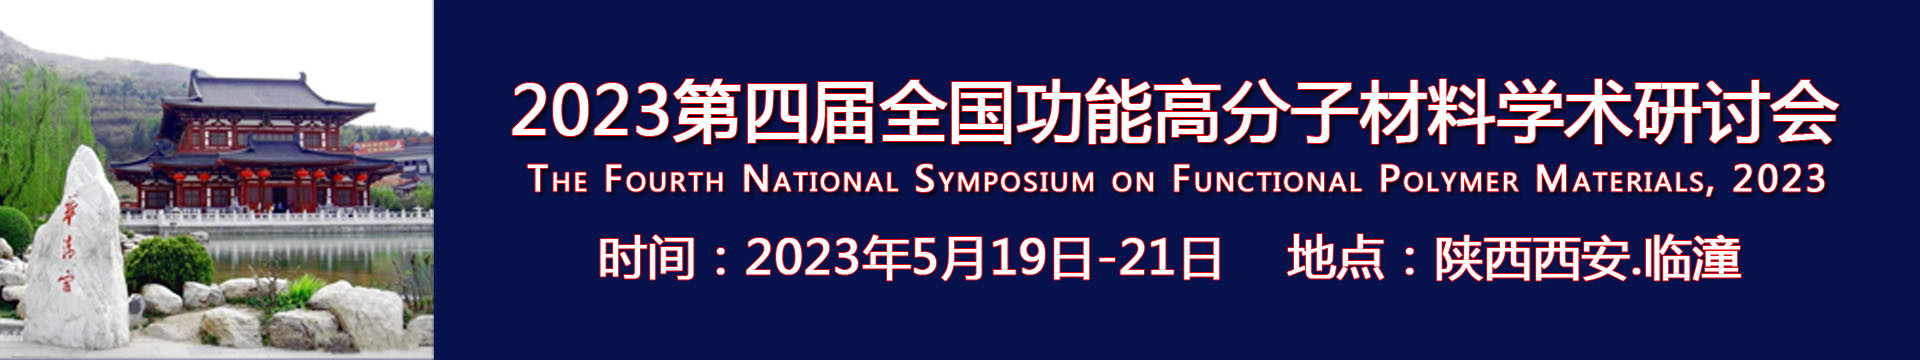 2023第四届全国功能高分子材料学术研讨会